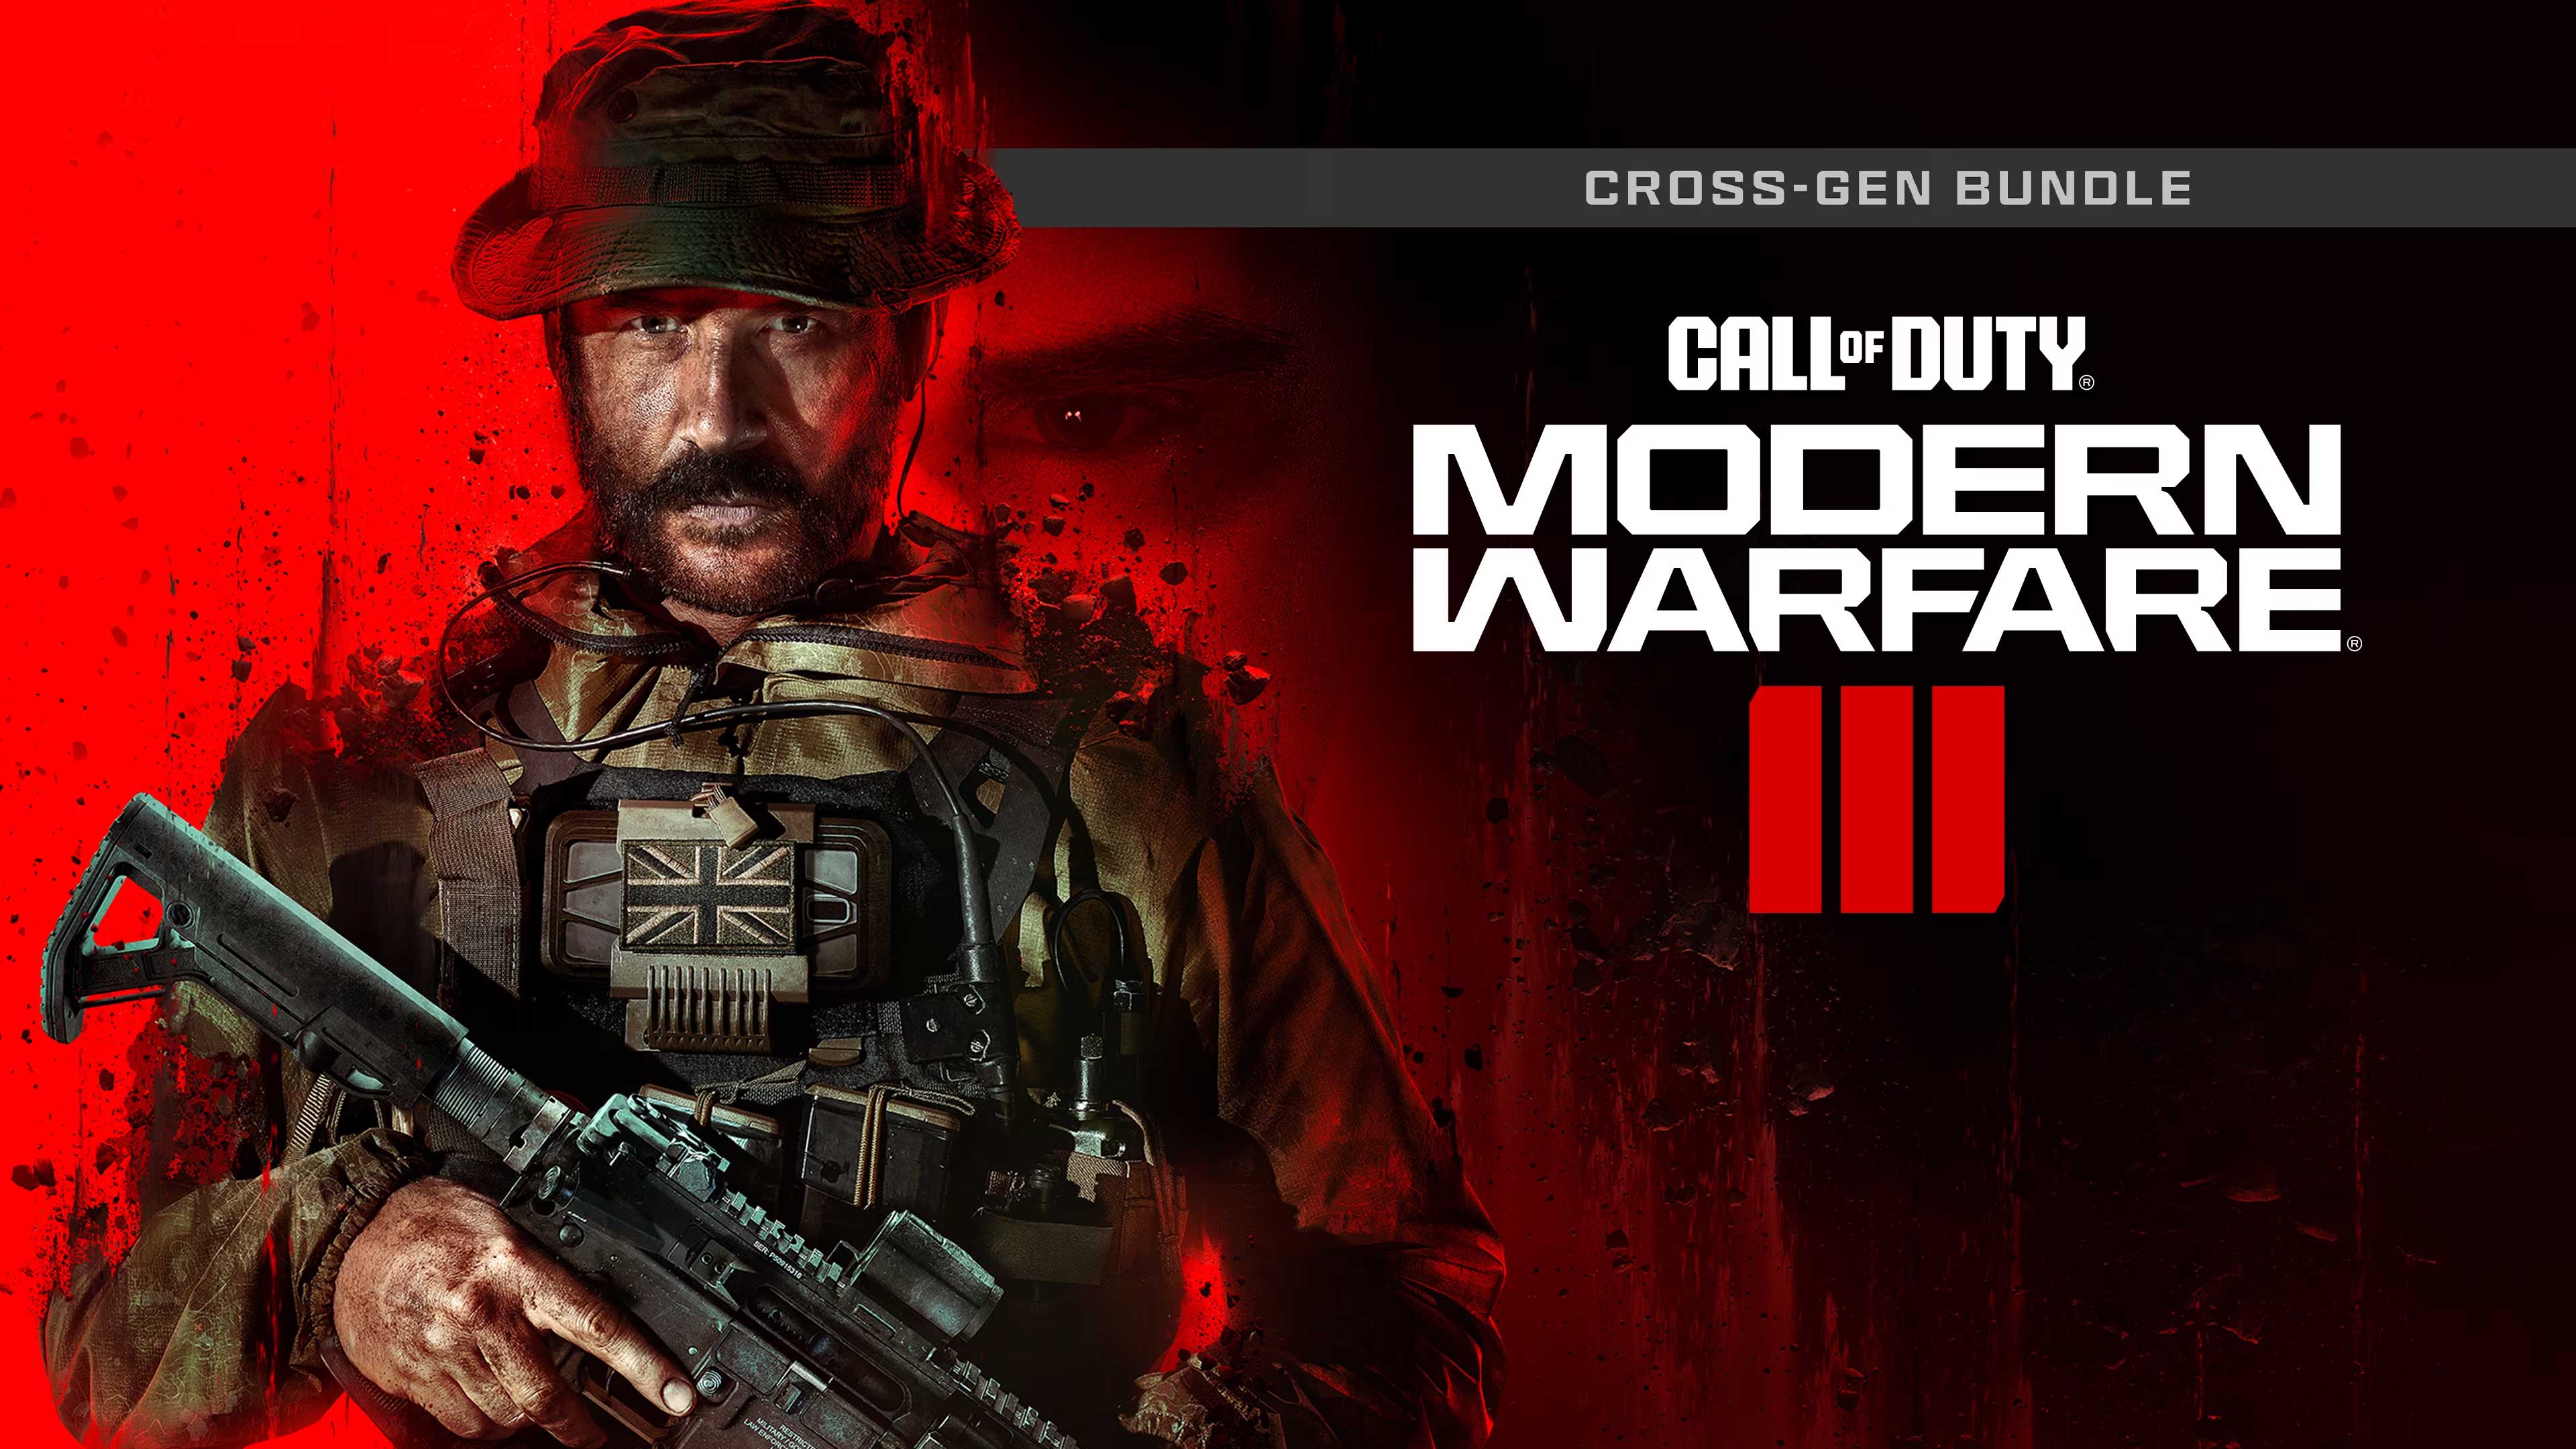 Call of Duty: Modern Warfare III - Cross-Gen Bundle, Officer Gamer, officergamer.com